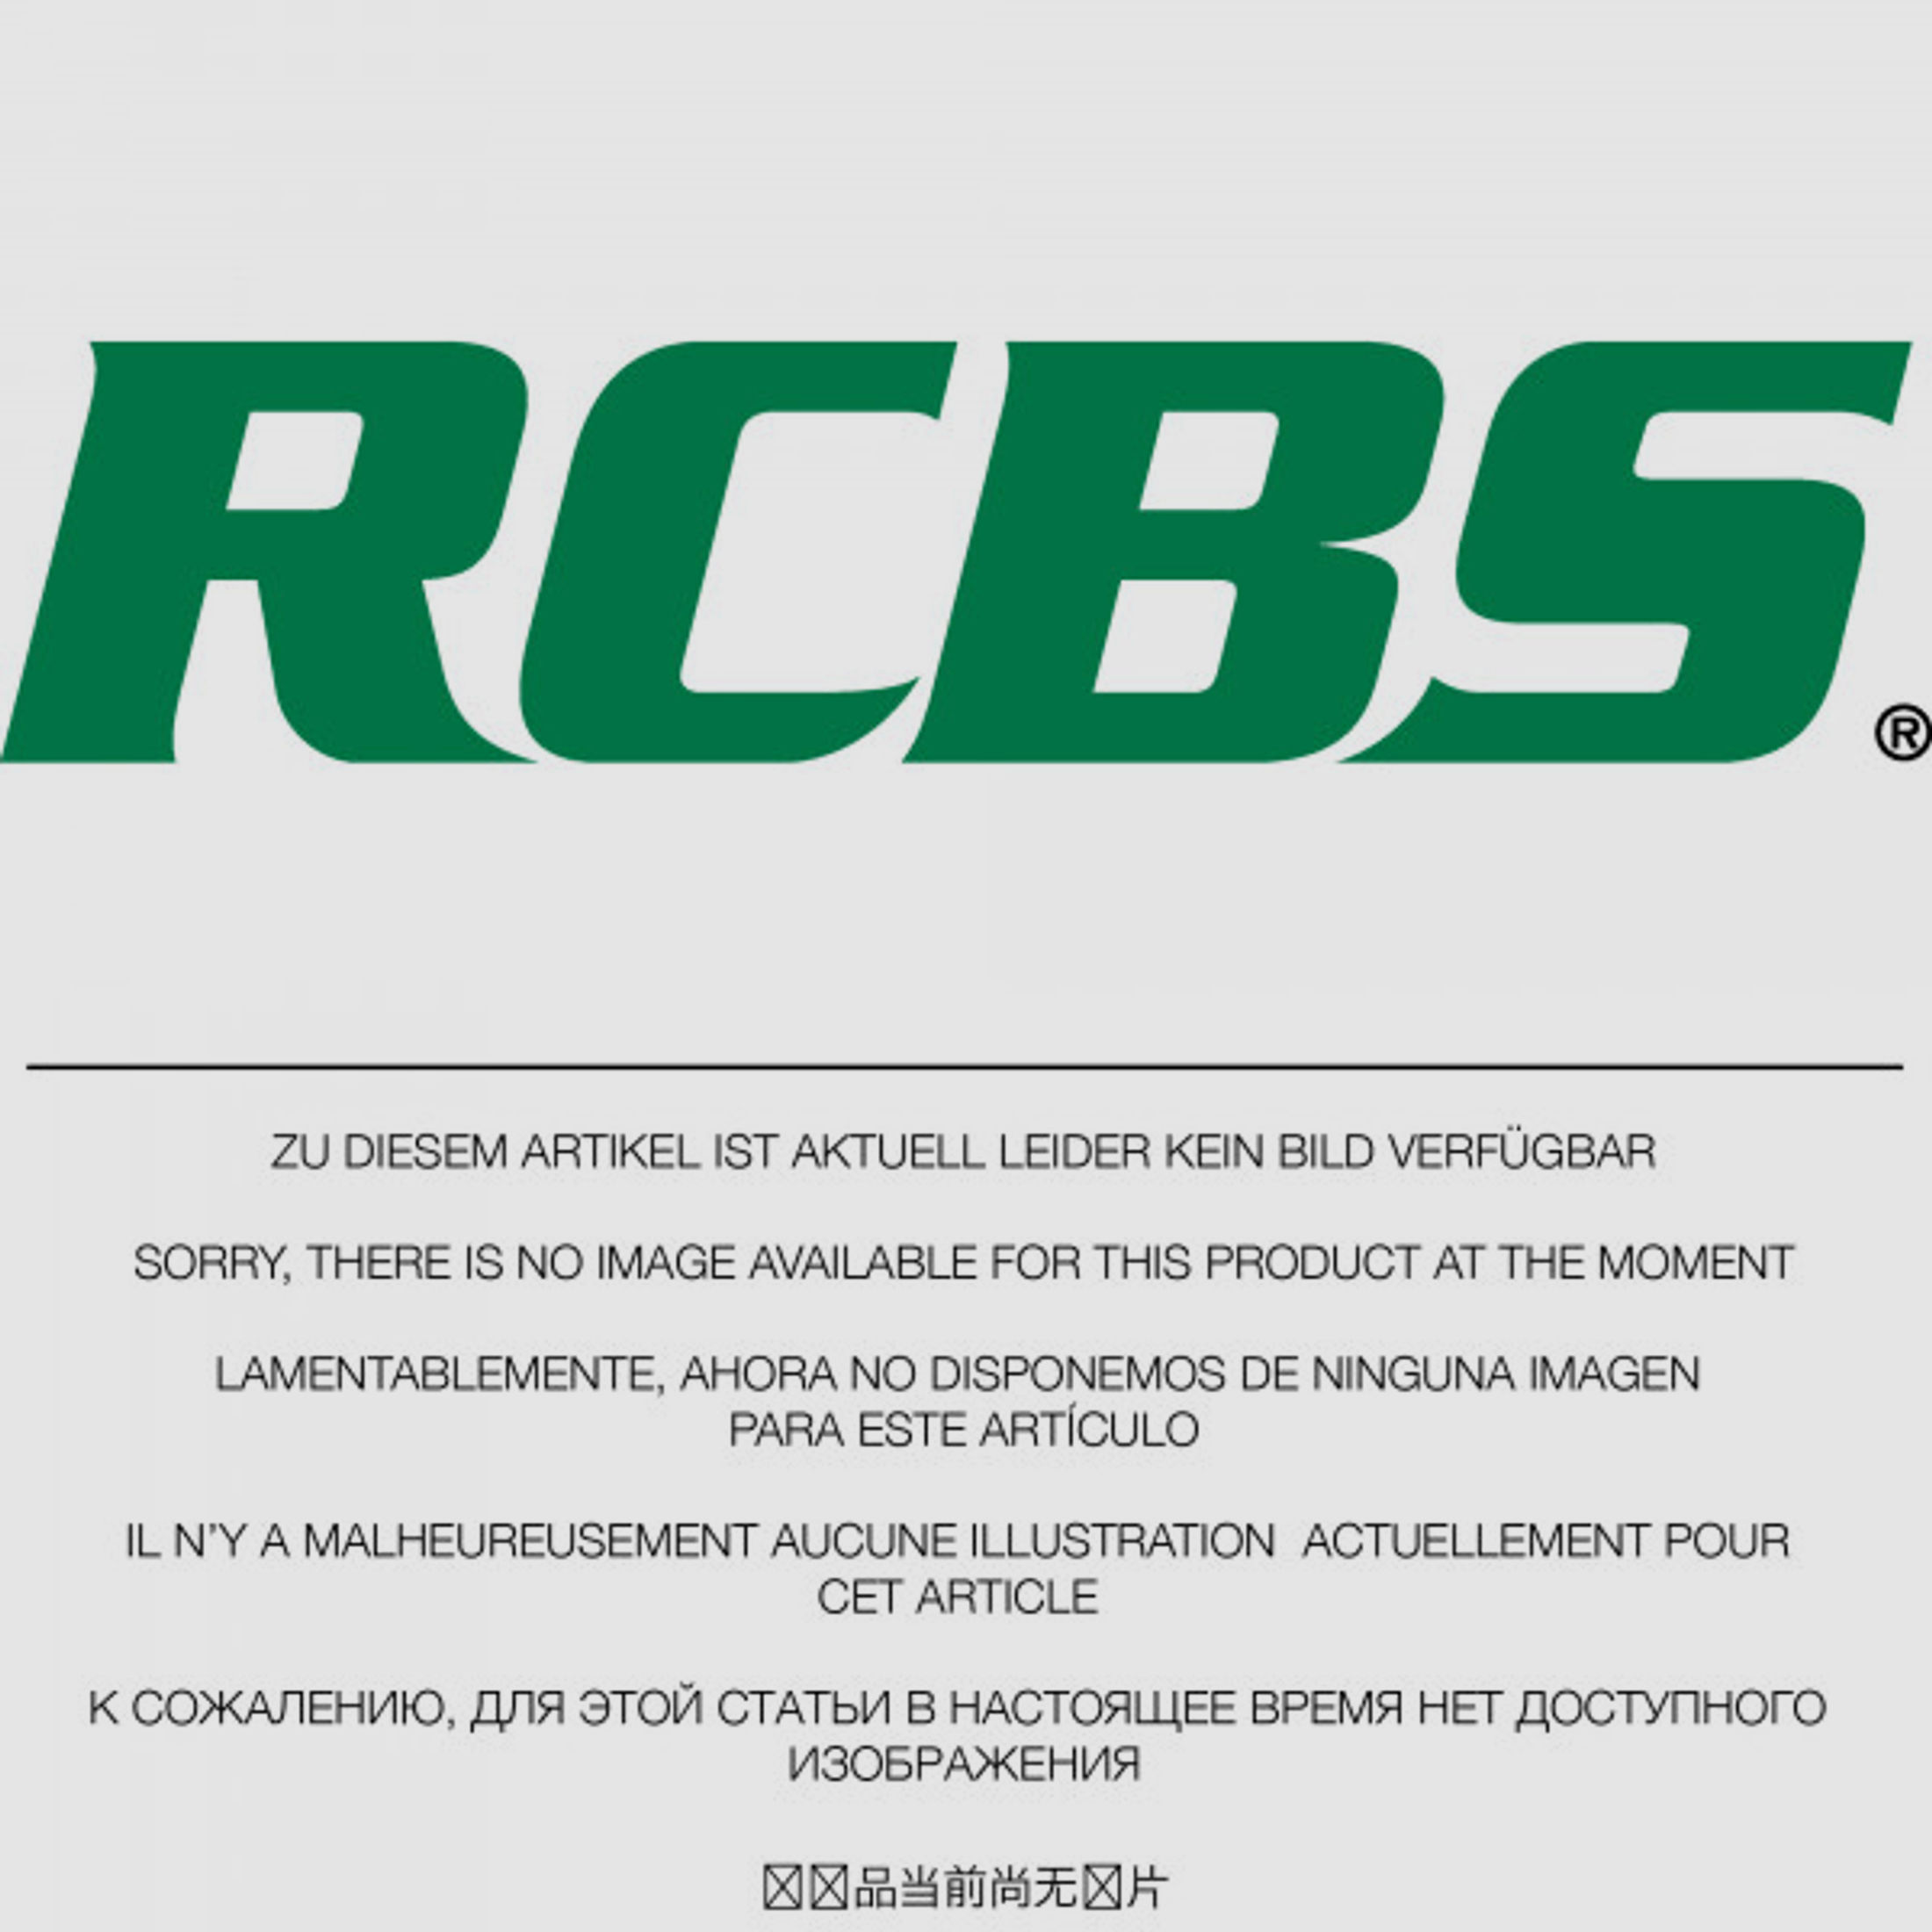 RCBS Lube-A-Matic Top Punch Geschoss Setzstempel Nr. 558 #85558